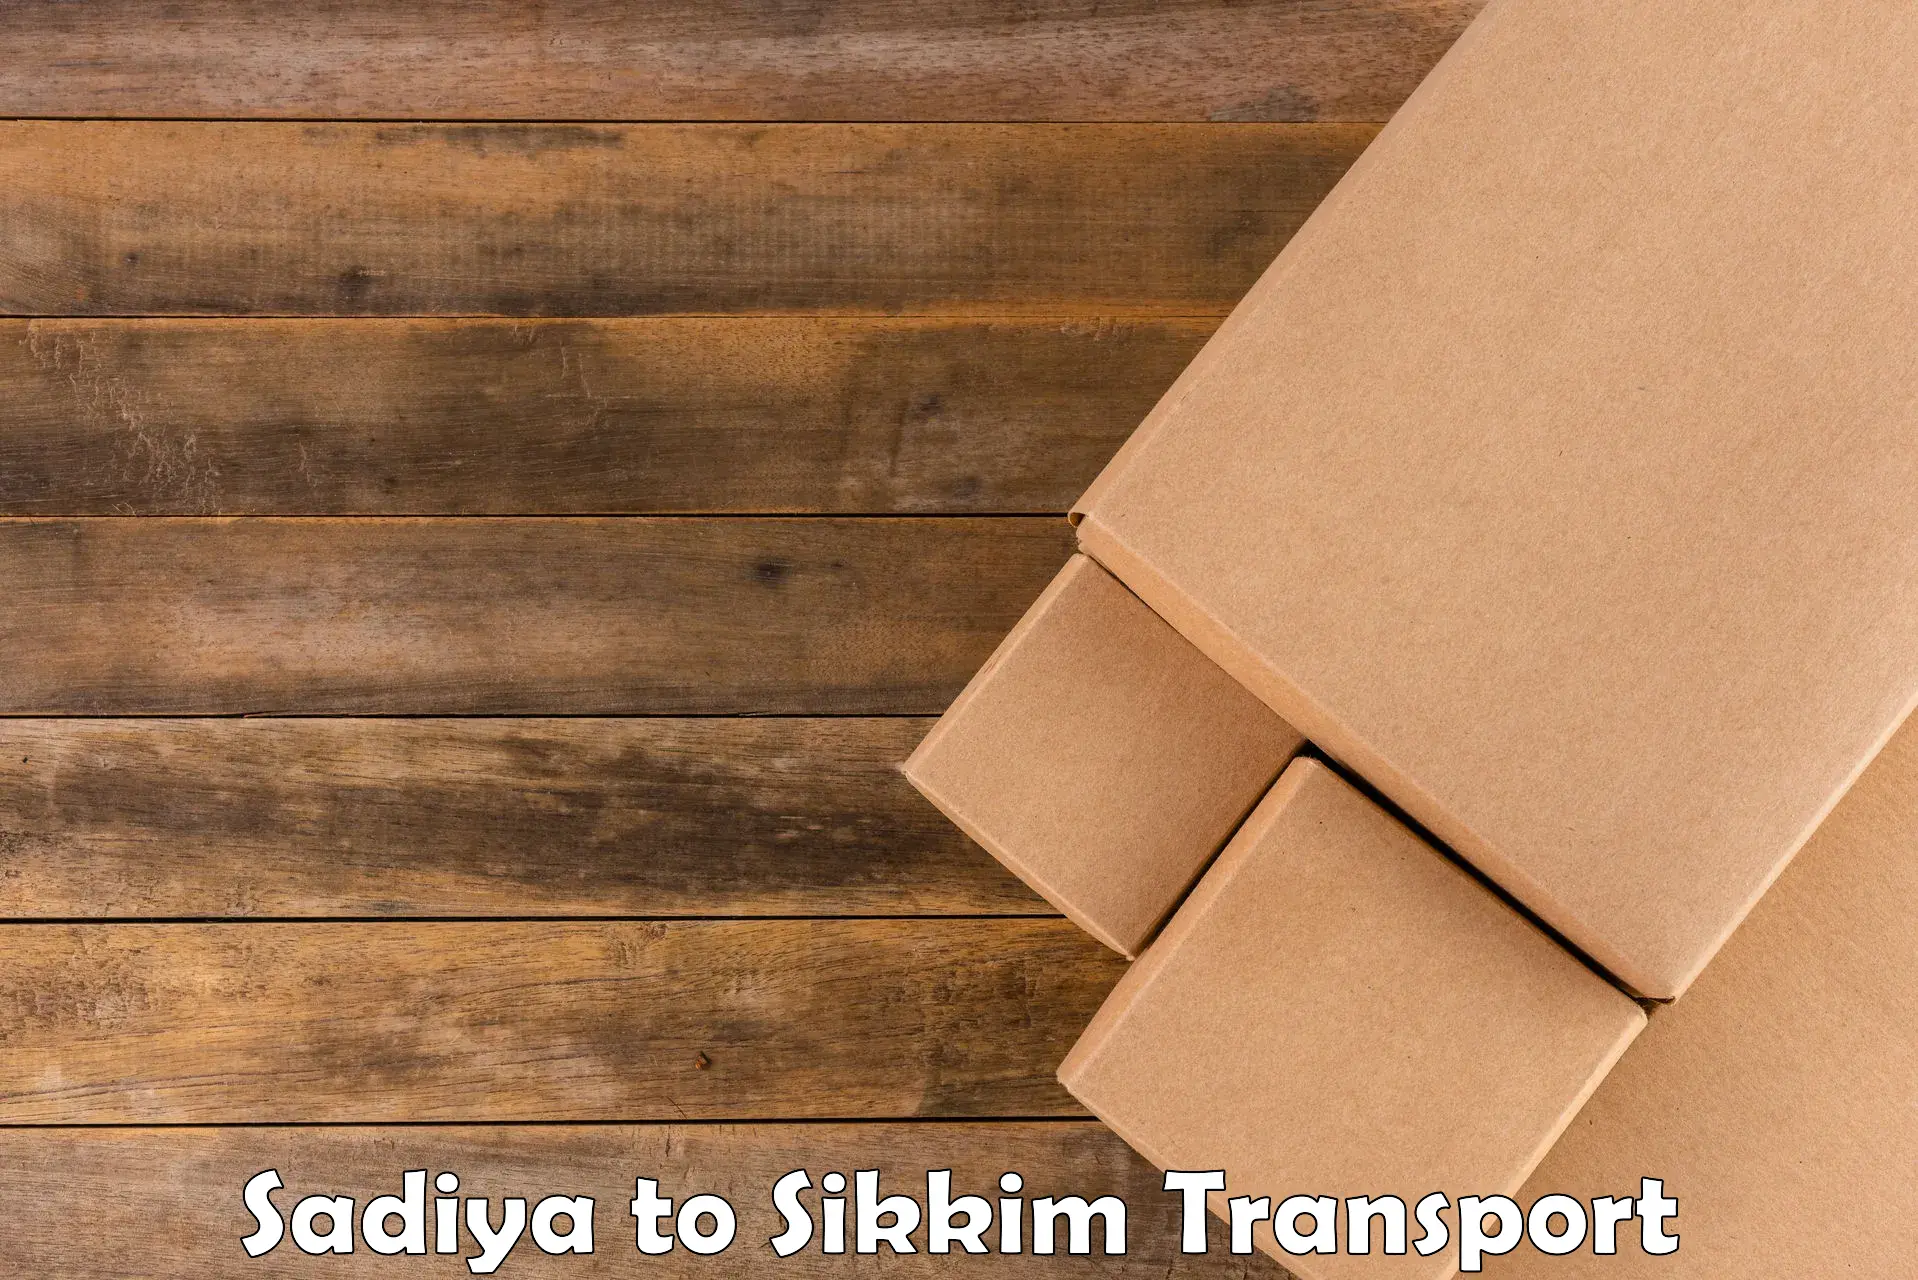 Delivery service Sadiya to Ranipool